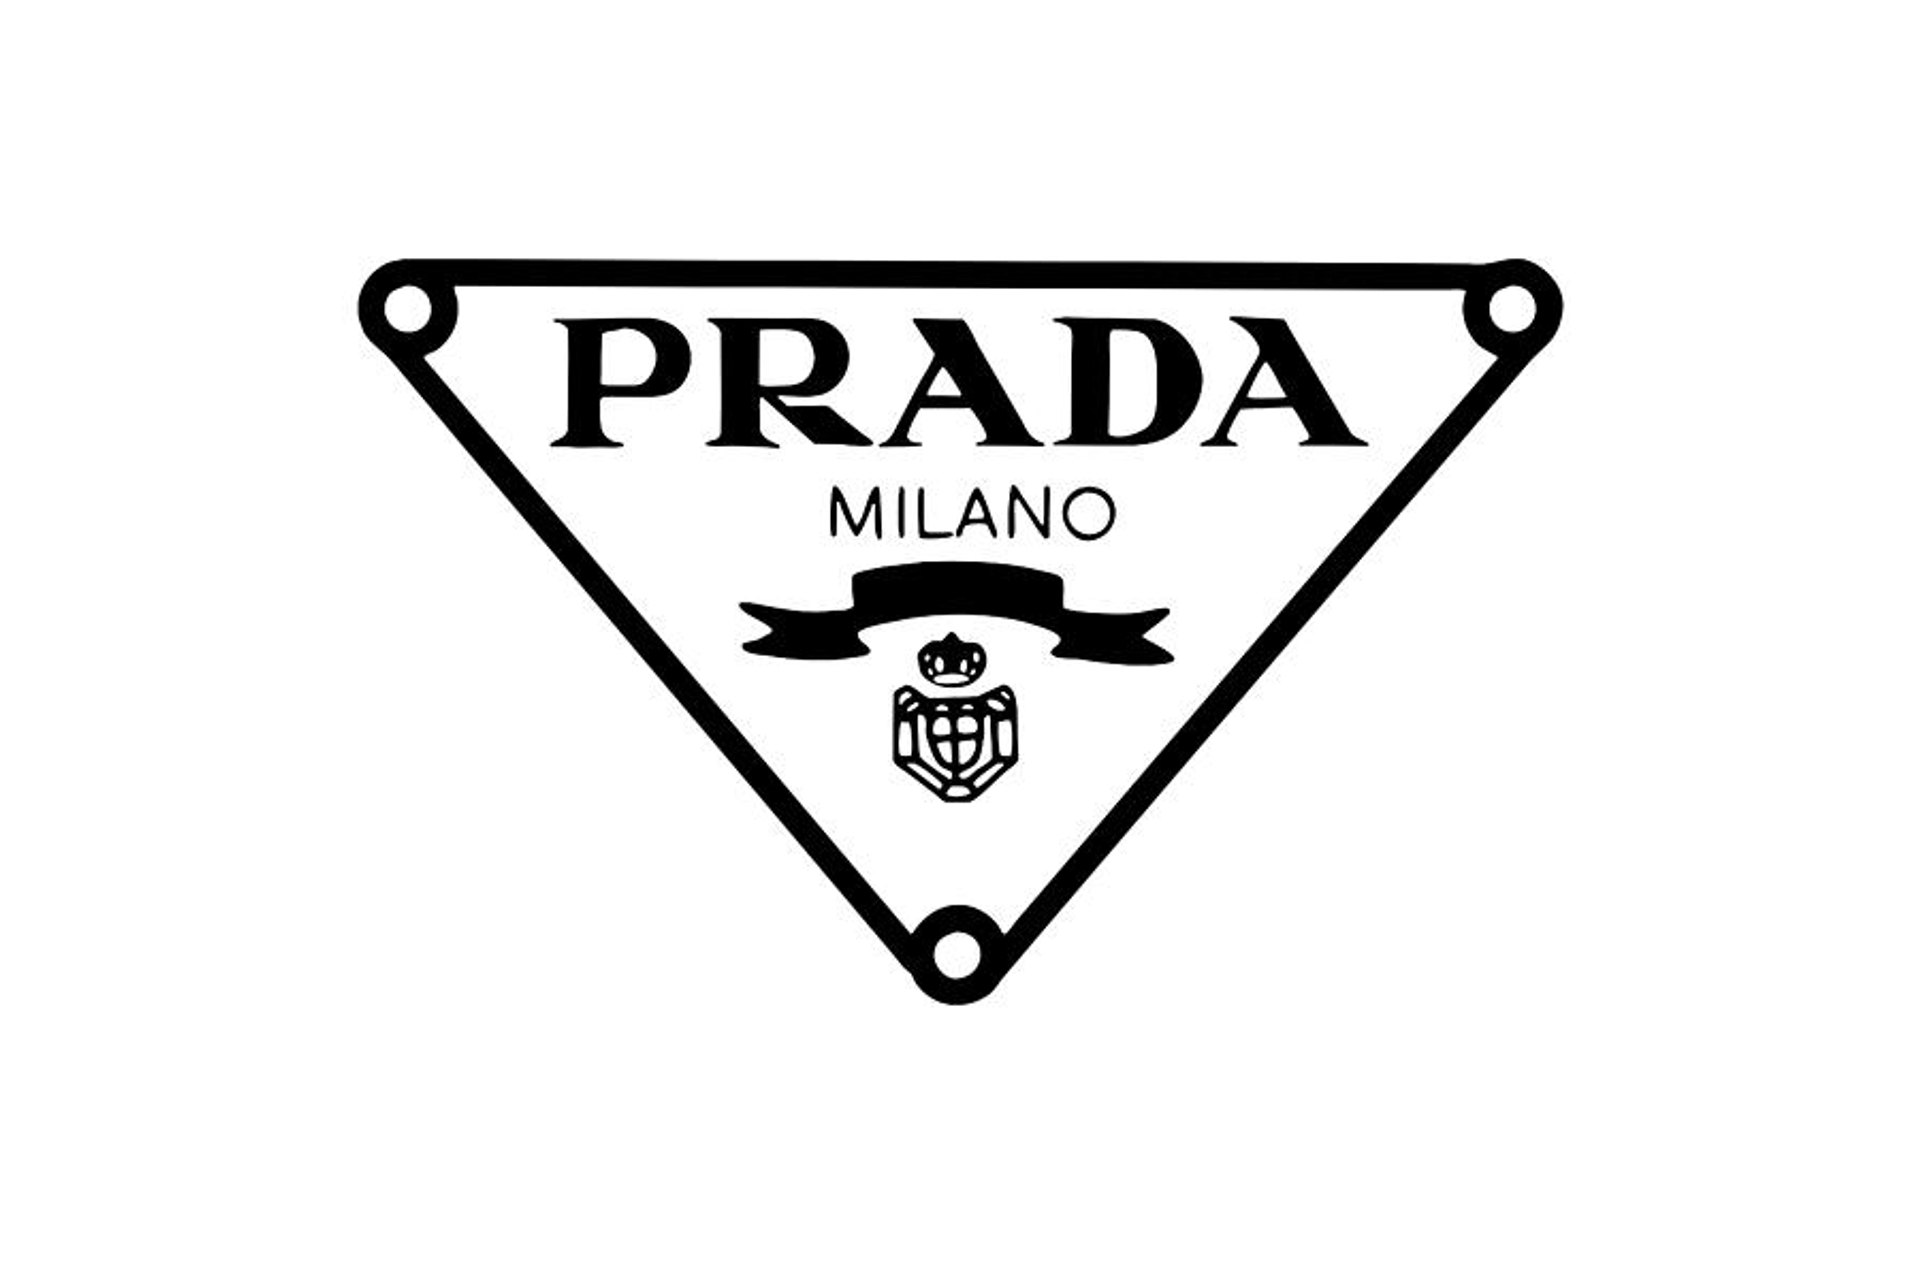 Prada's original design associated with Italy's royal family